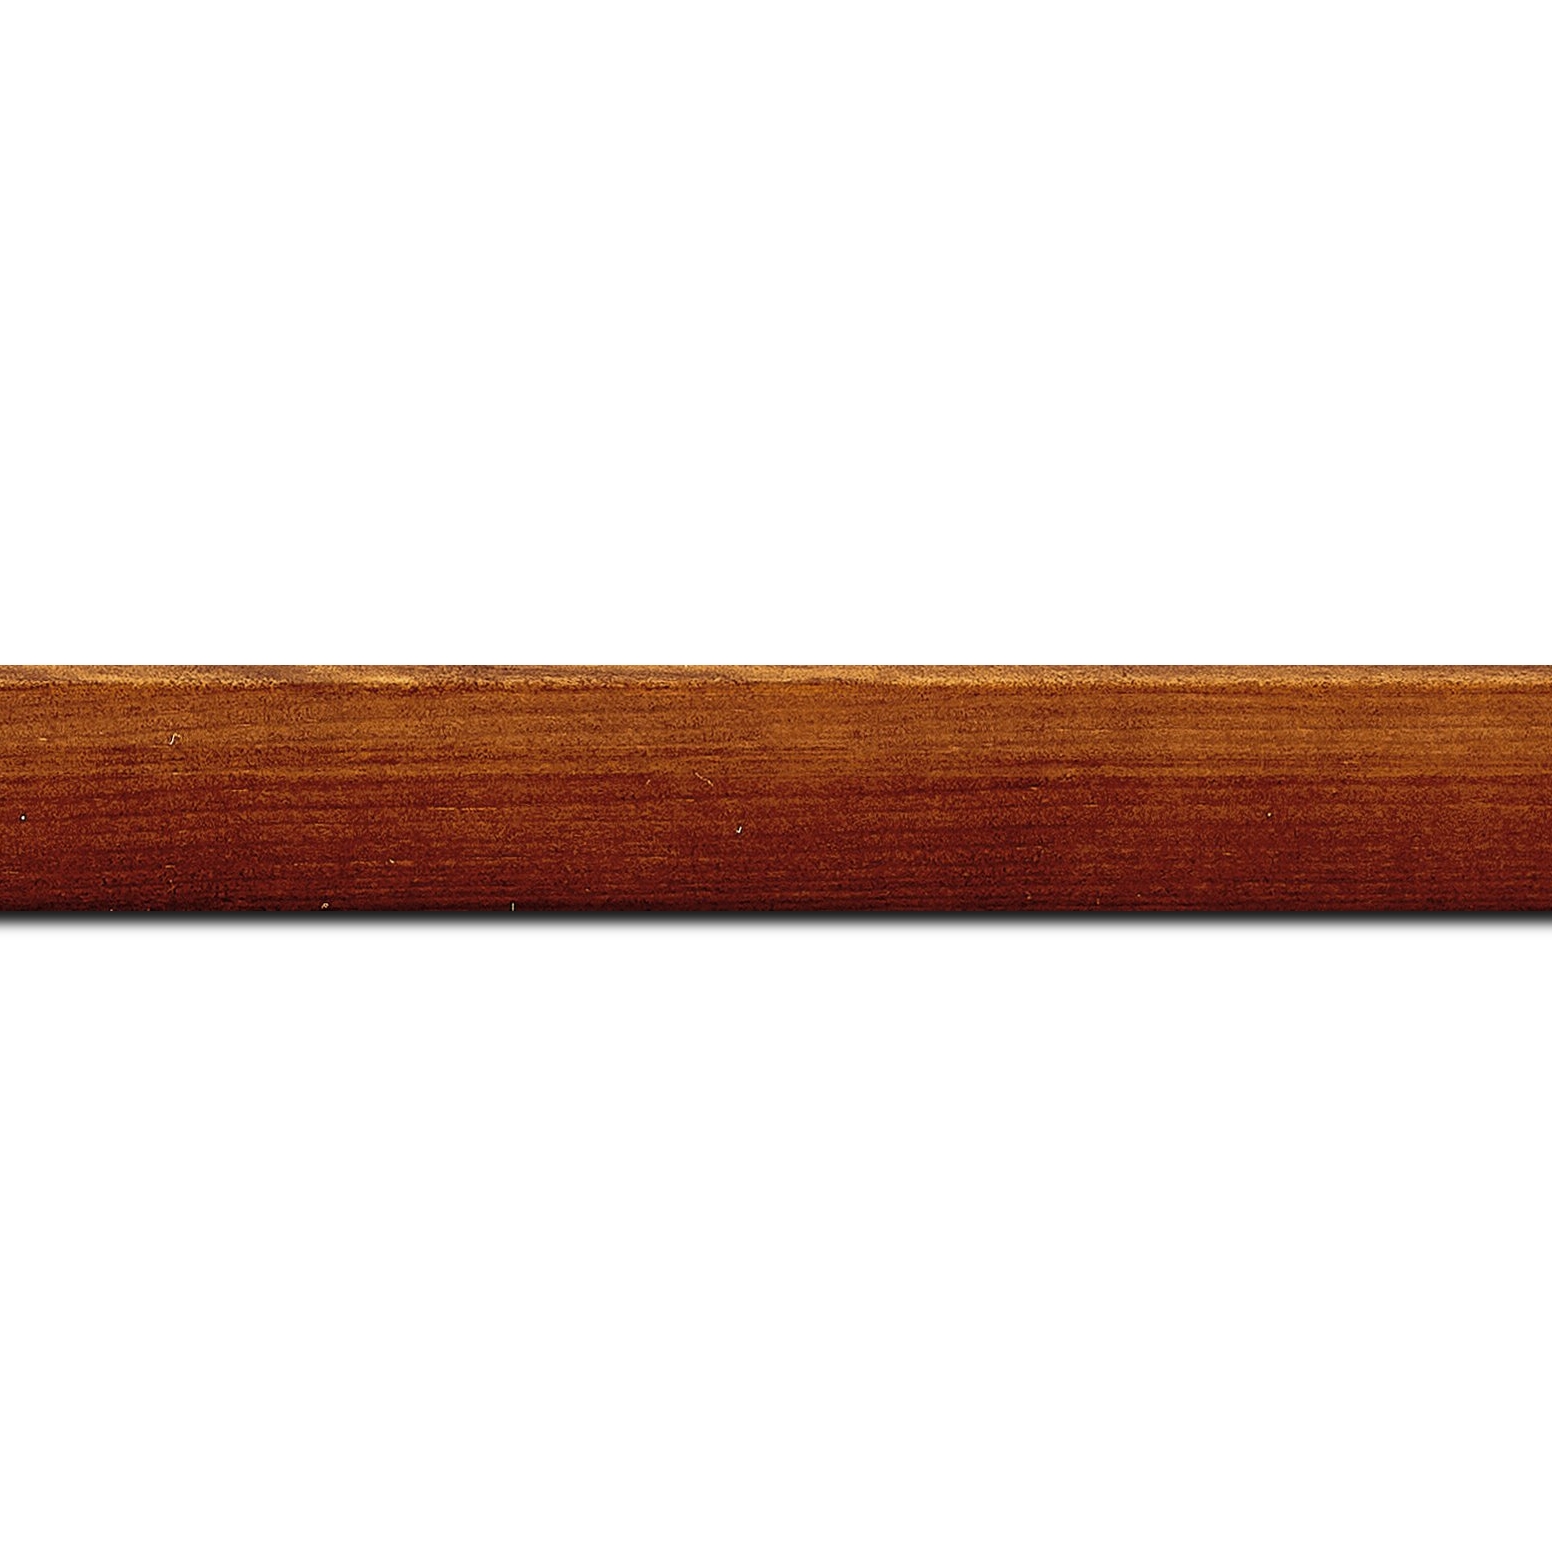 Pack par 12m, bois profil arrondi en pente plongeant largeur 2.4cm couleur marron miel finition vernis brillant,veine du bois  apparent (pin) ,  (longueur baguette pouvant varier entre 2.40m et 3m selon arrivage des bois)